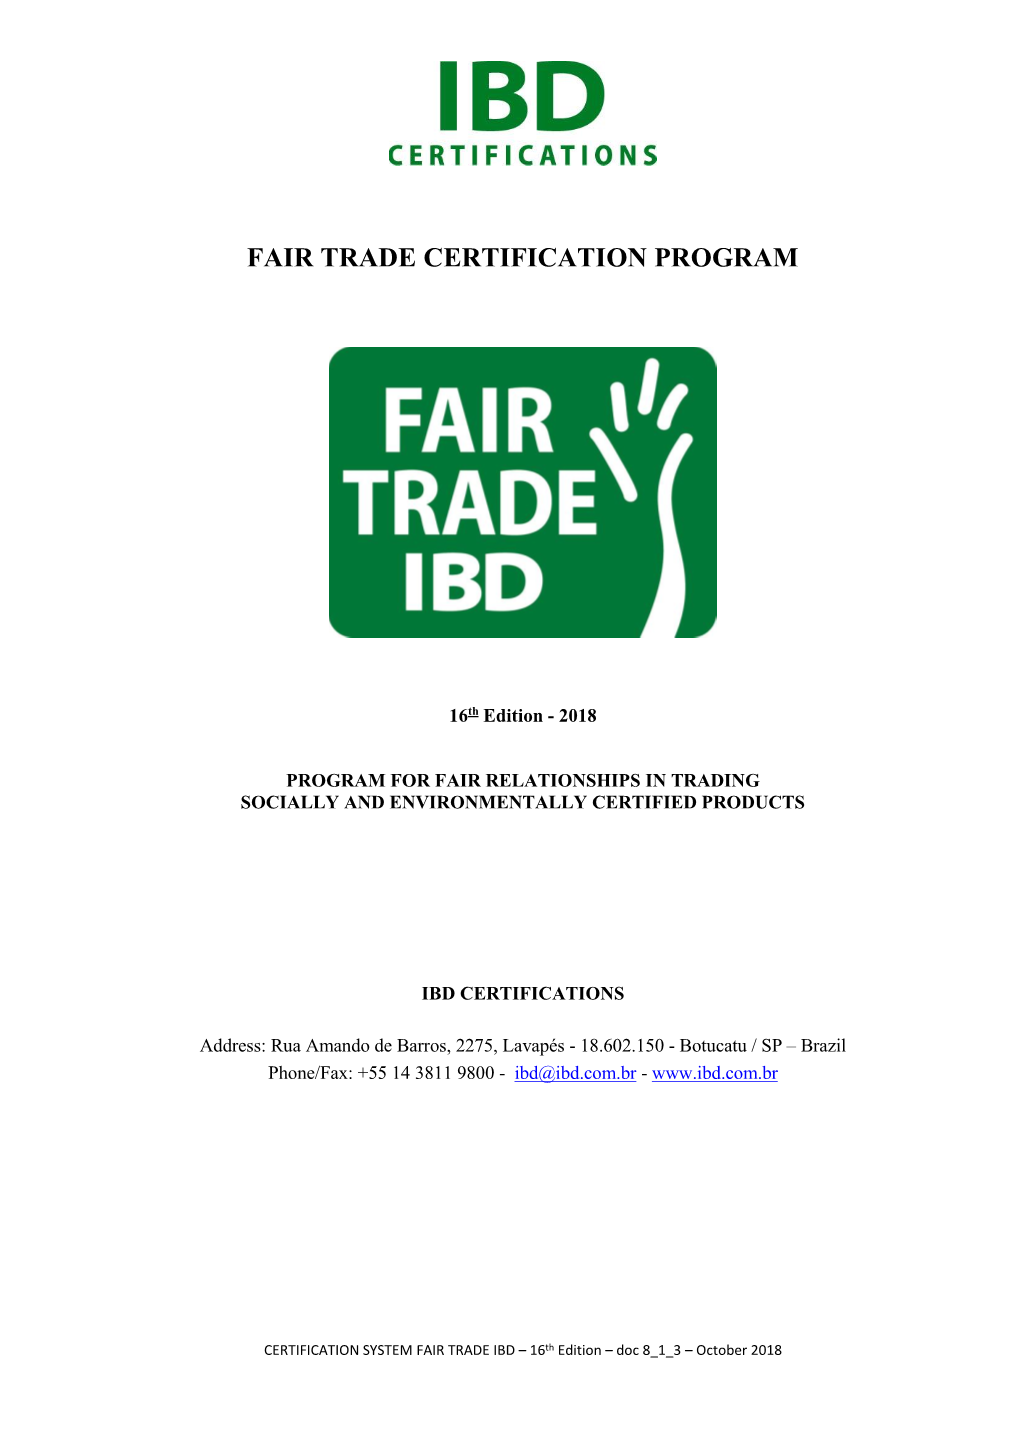 Fair Trade Certification Program